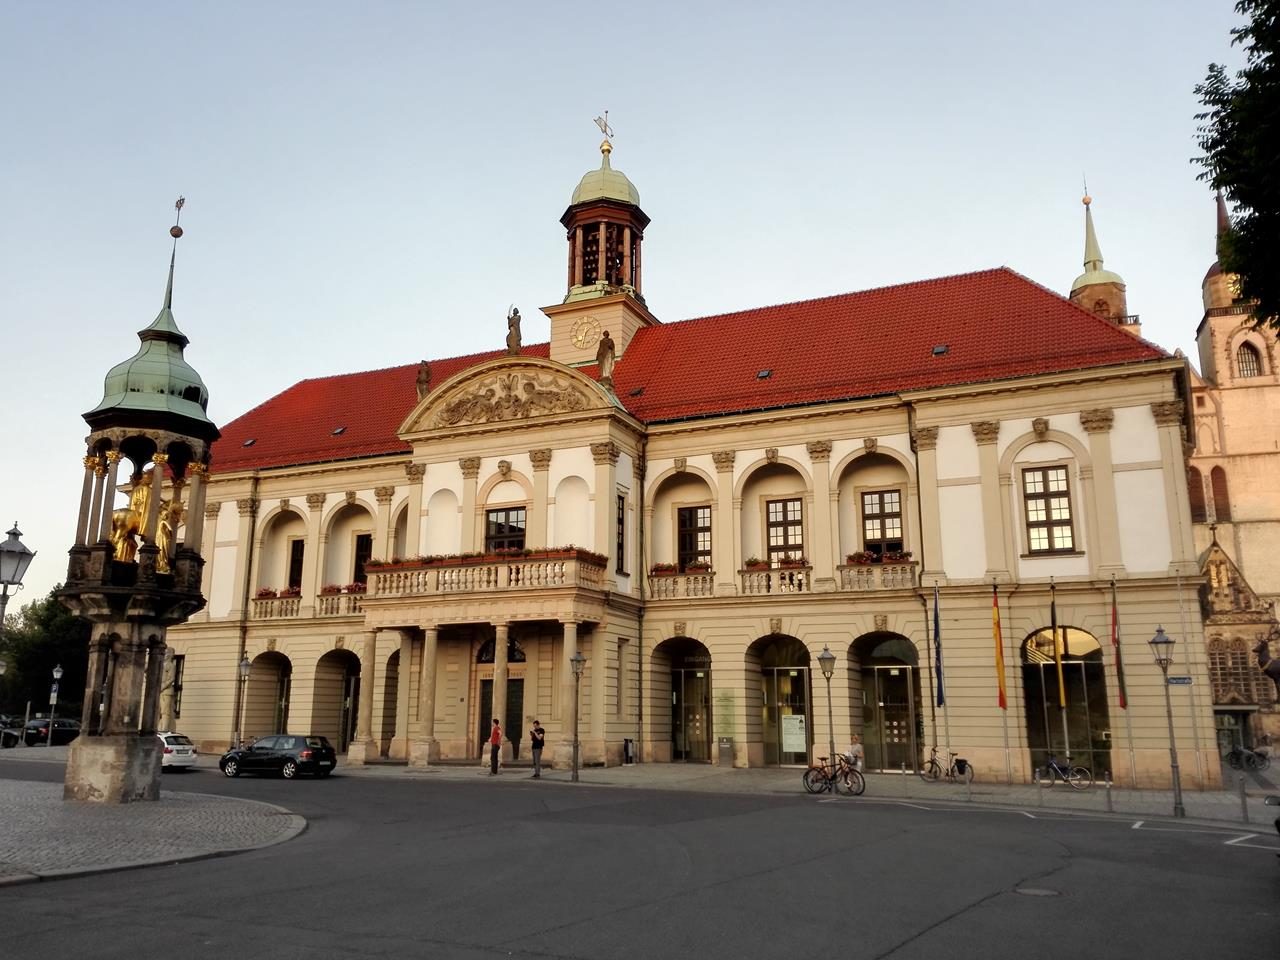 Das Alte Rathaus am Marktplatz, davor der "Goldene Reiter"